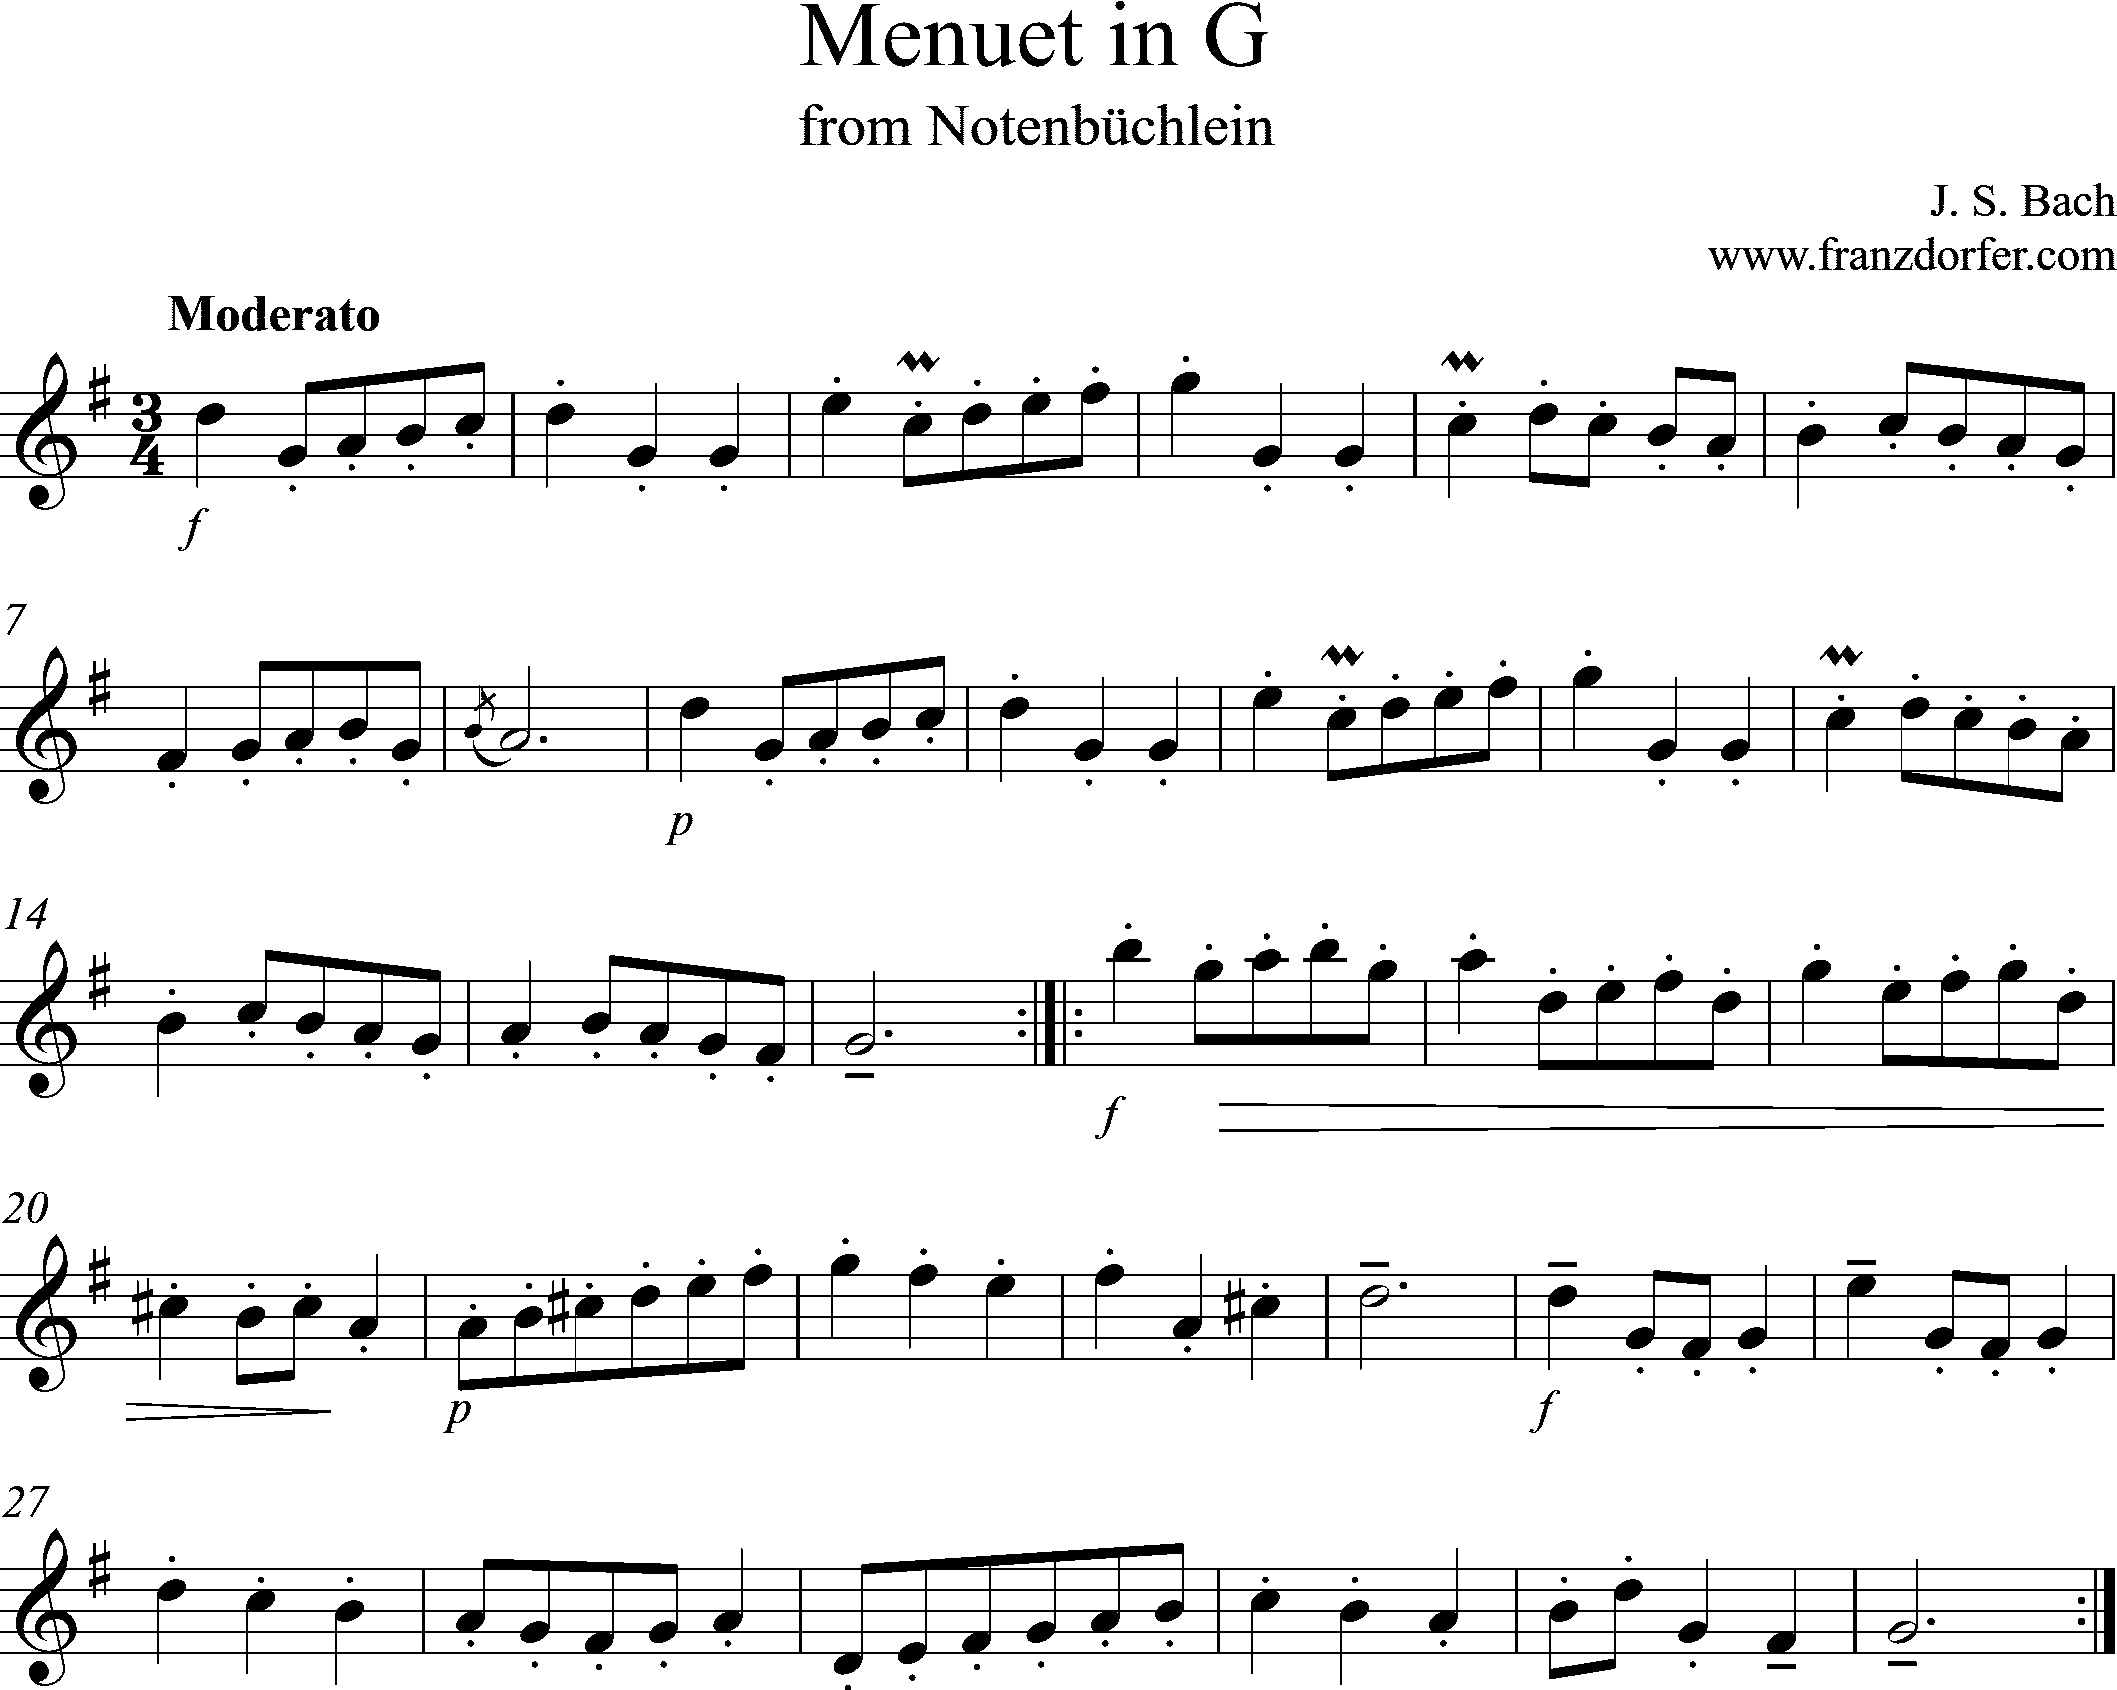 Noten für Blockflöte, MEnuet in G, Bach